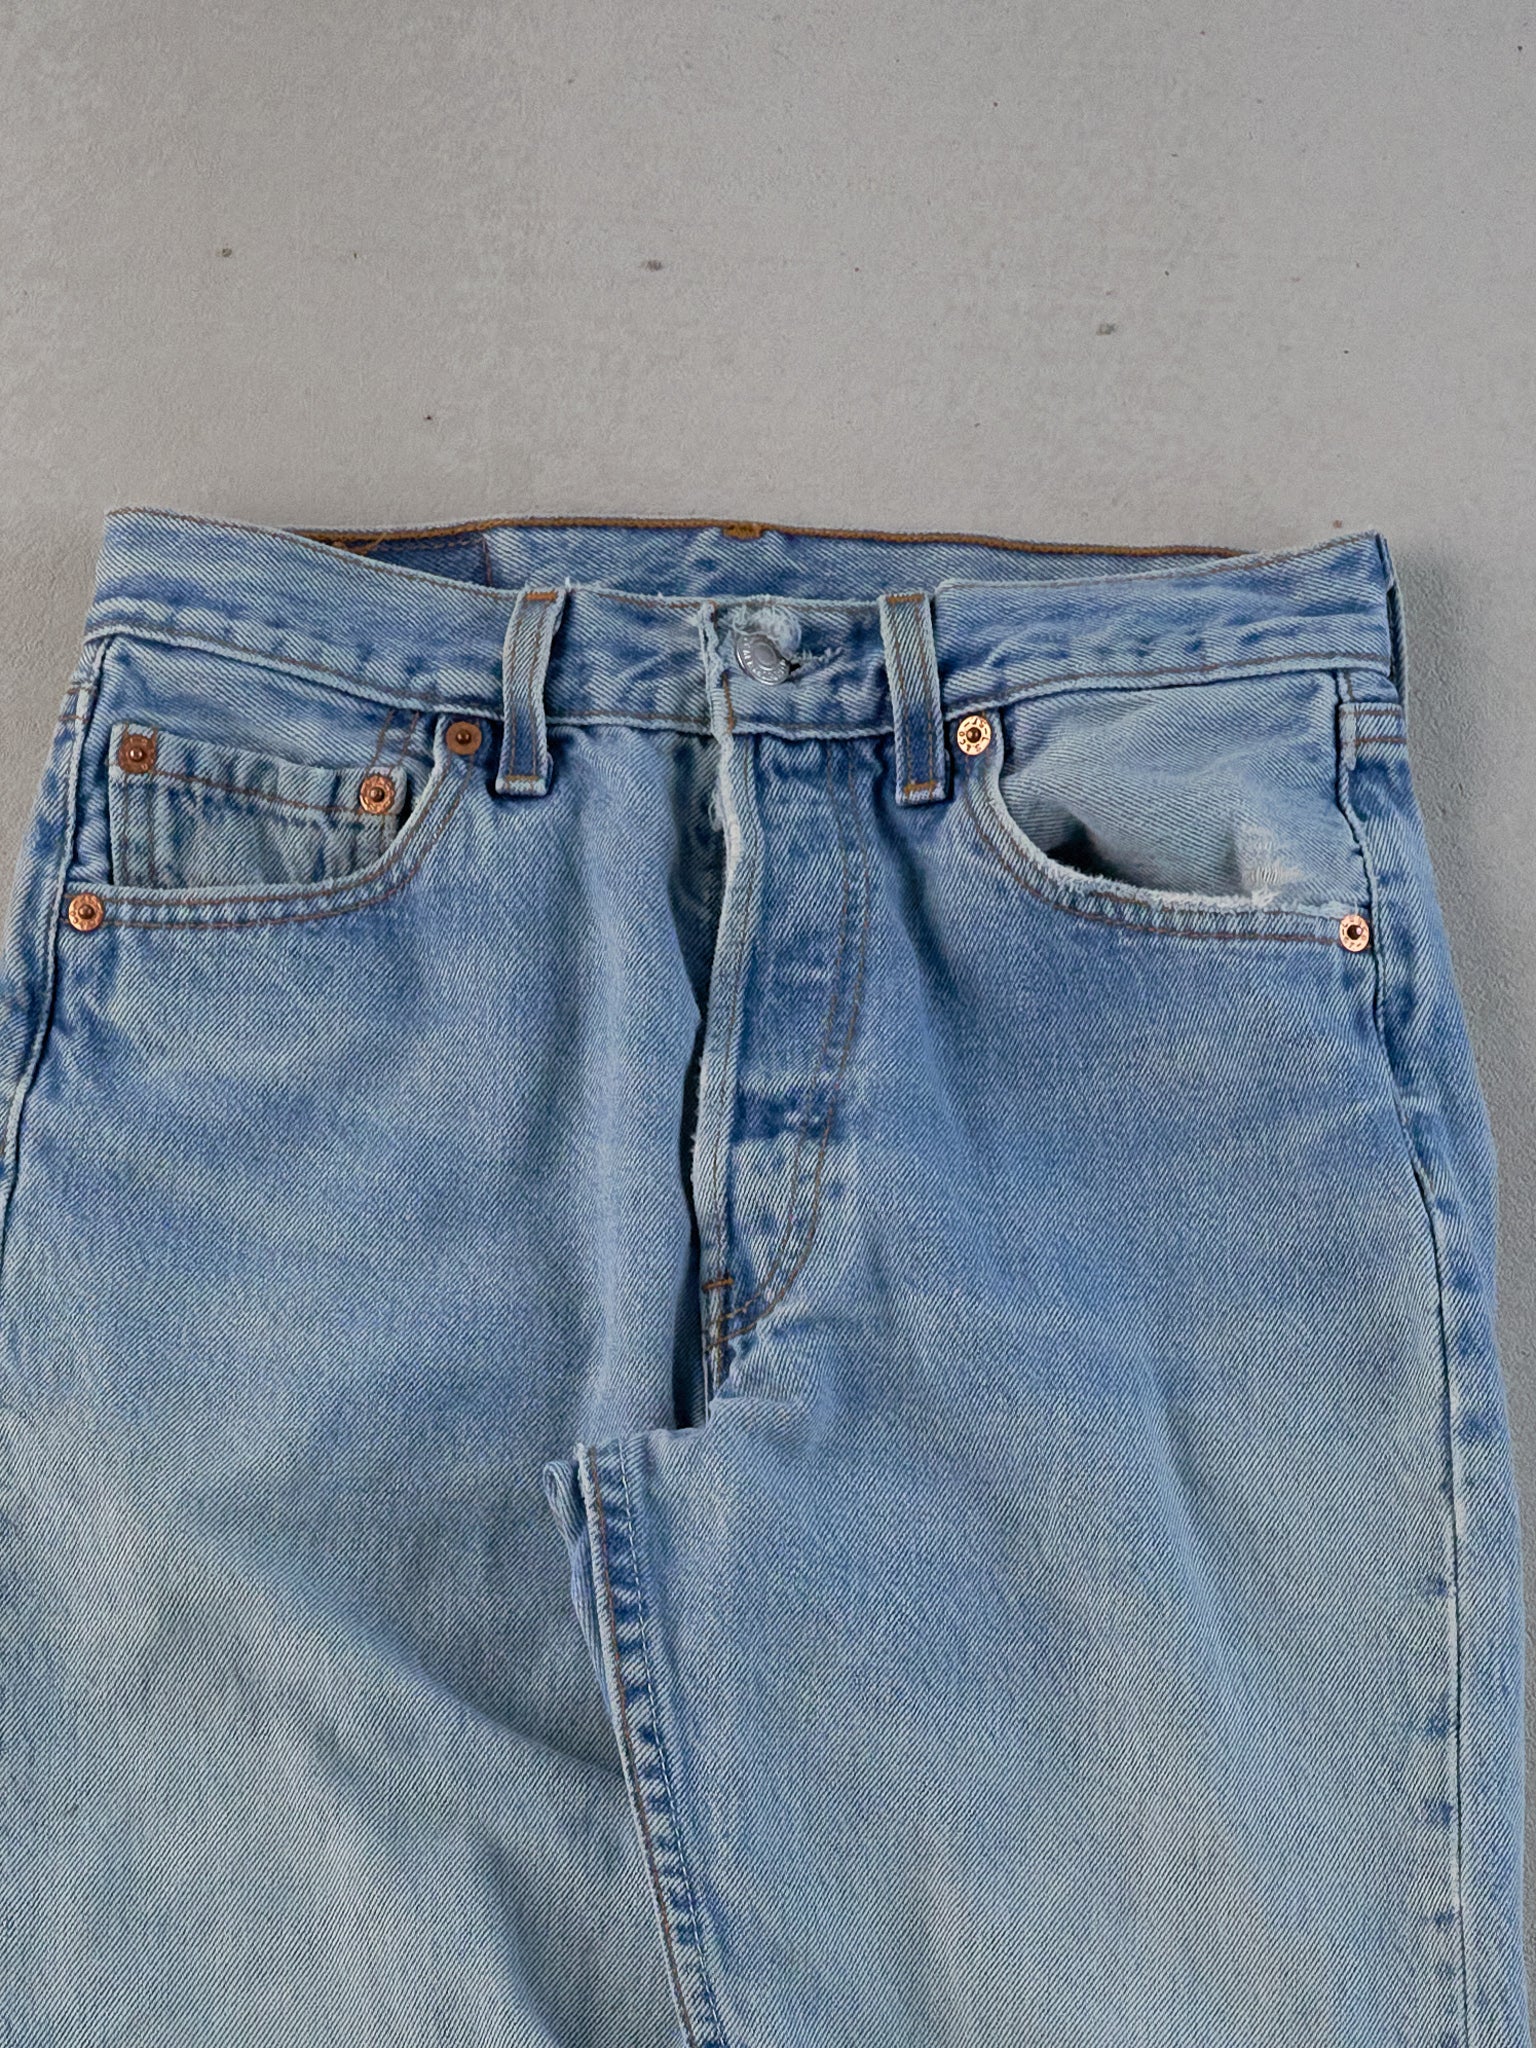 Vintage 90s Light Blue Levi's 501 Denim Jeans (26x35)